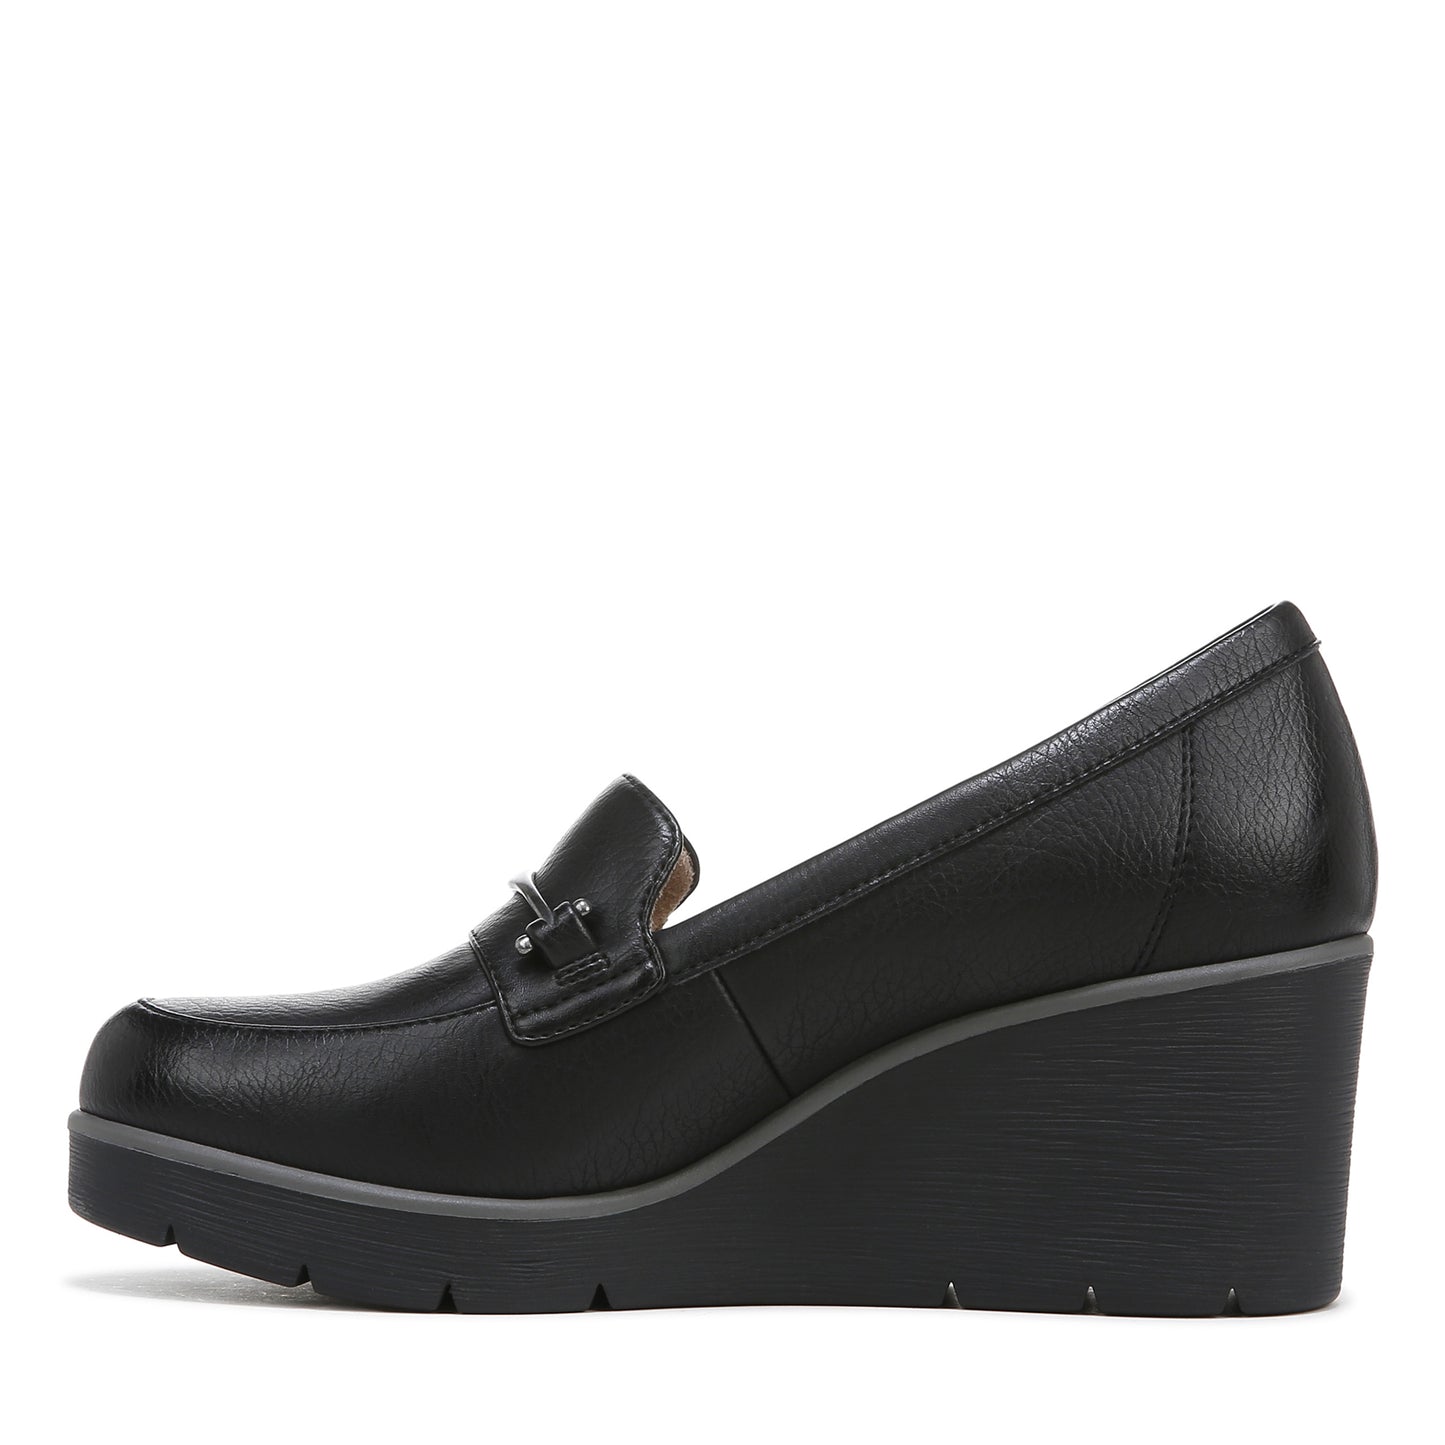 Peltz Shoes  Women's SOUL Naturalizer Achieve Loafer BLACK I2177S2001